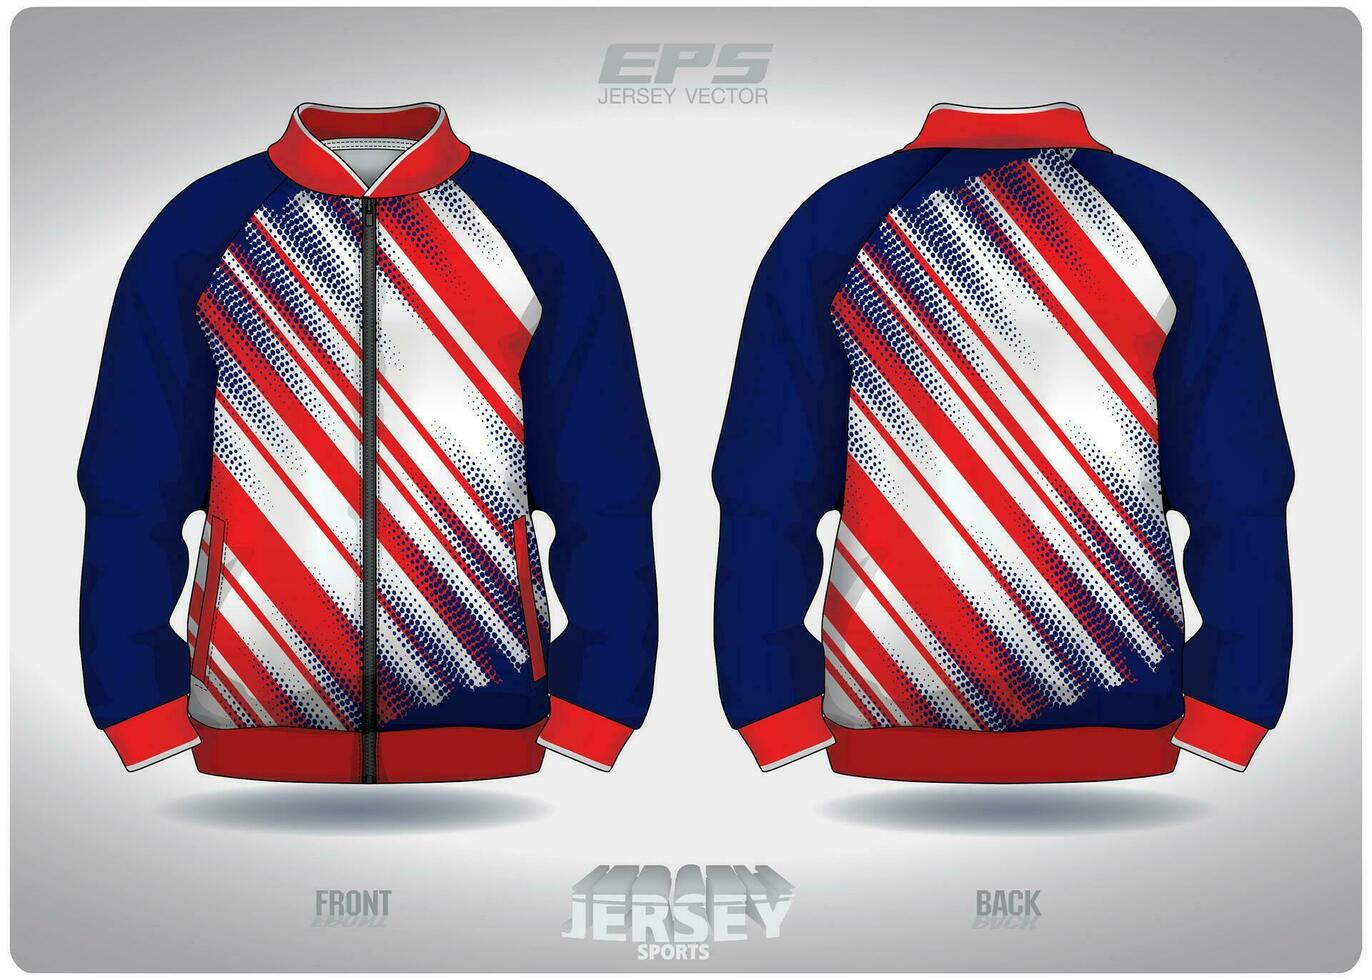 eps jersey sporter skjorta vector.red blå lutning polka punkt mönster design, illustration, textil- bakgrund för sporter lång ärm Tröja vektor